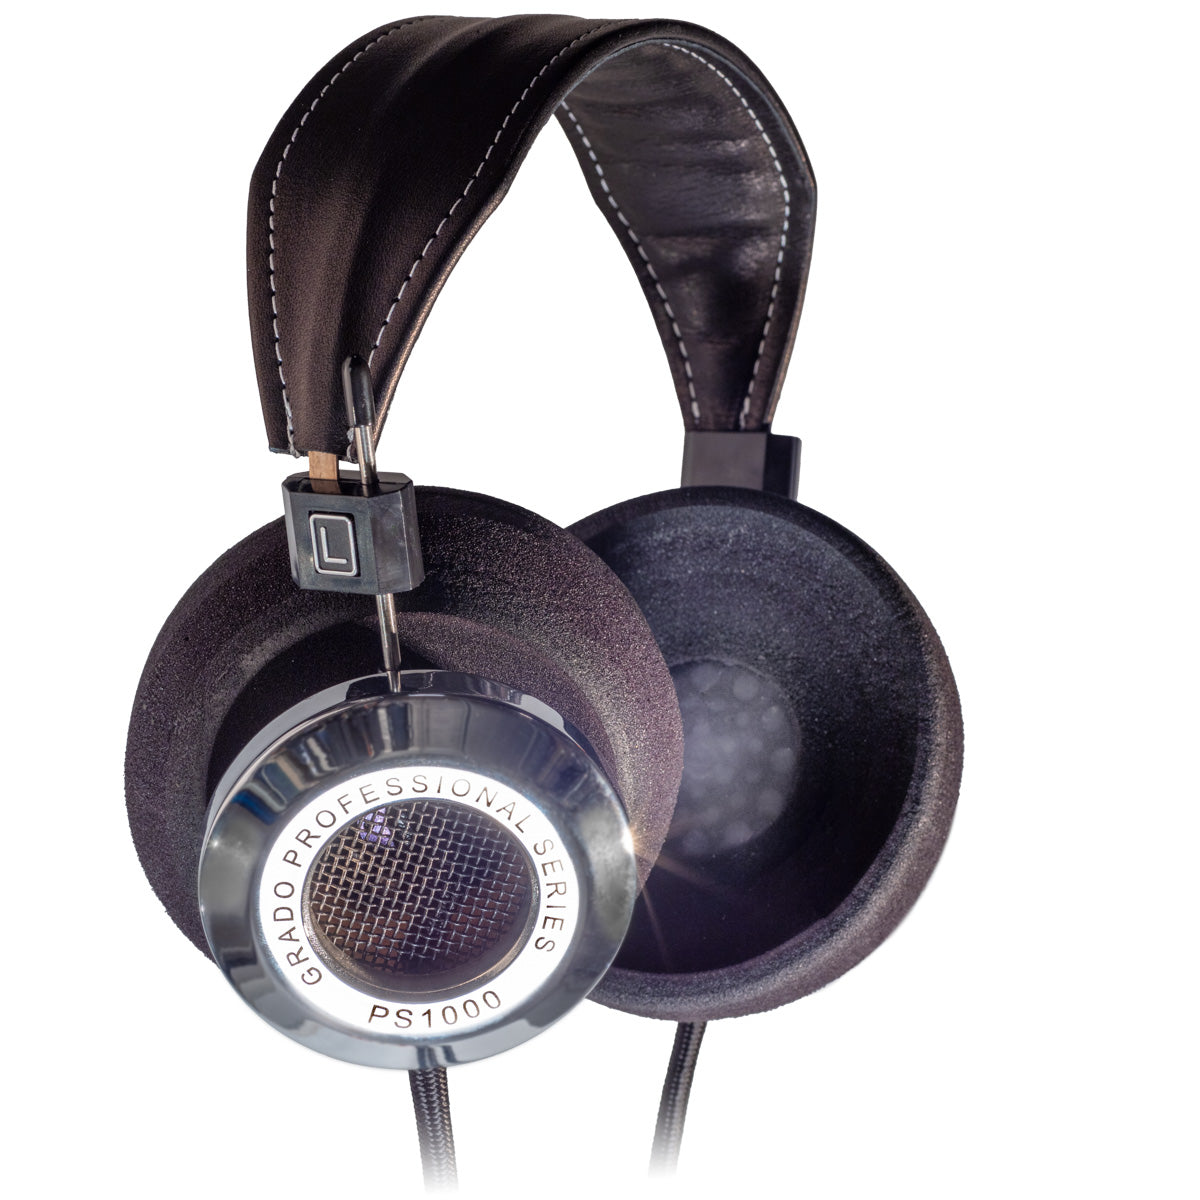 SR325x-Headphones-4OurEars